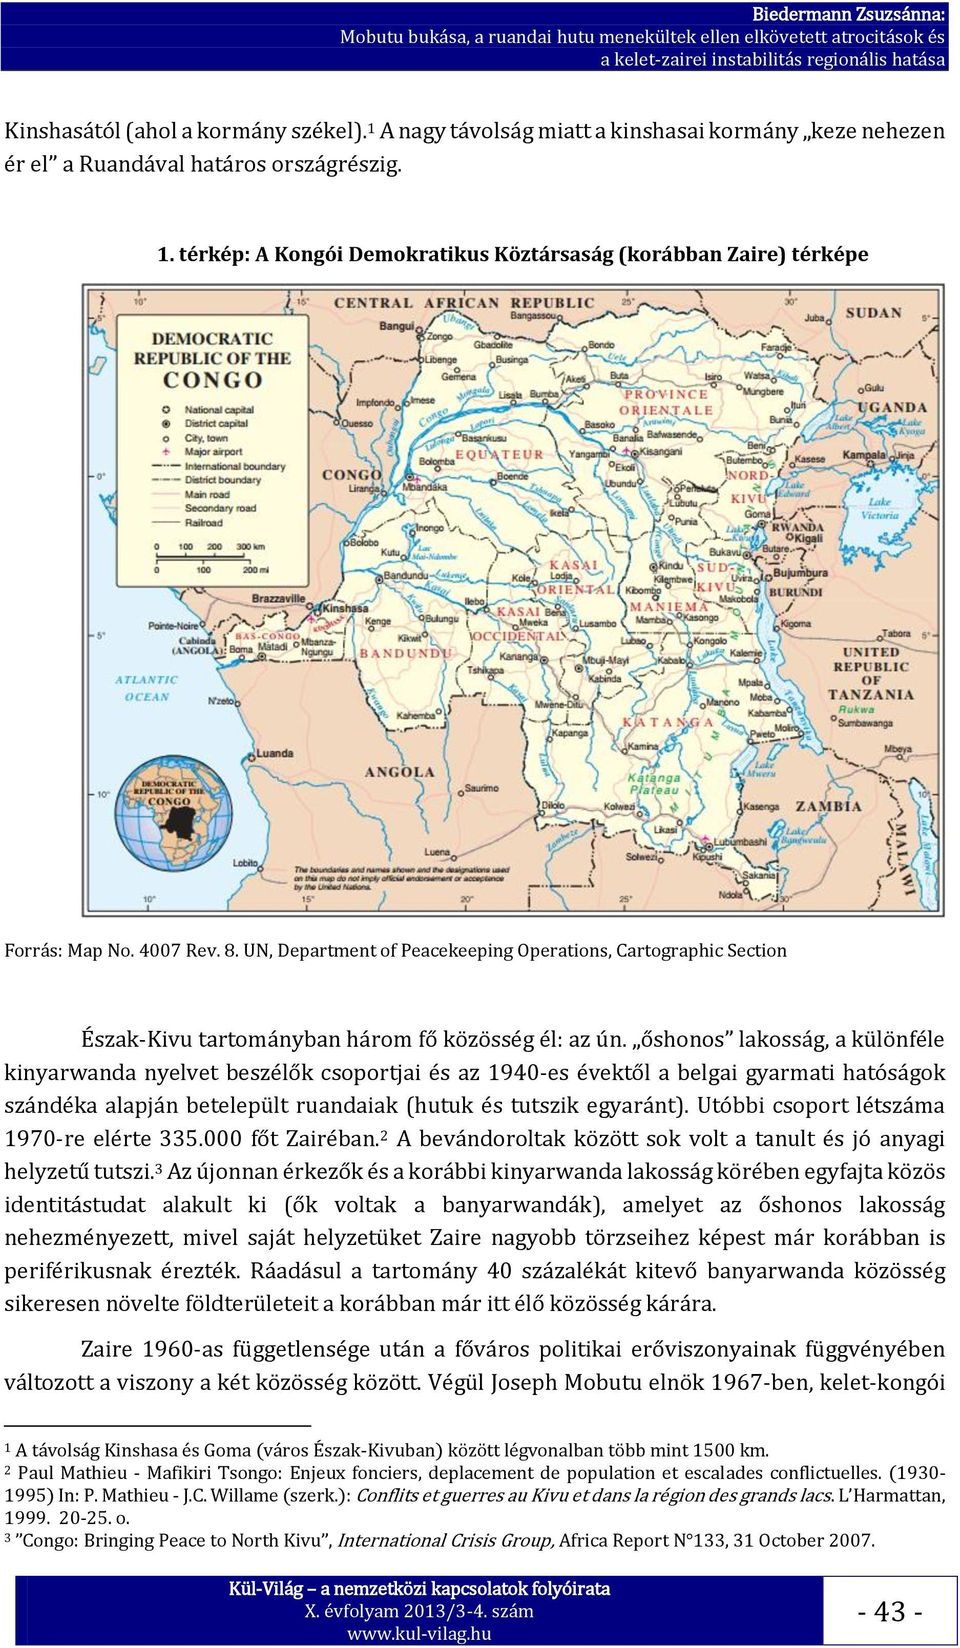 őshonos lakosság, a különféle kinyarwanda nyelvet beszélők csoportjai és az 1940-es évektől a belgai gyarmati hatóságok szándéka alapján betelepült ruandaiak (hutuk és tutszik egyaránt).